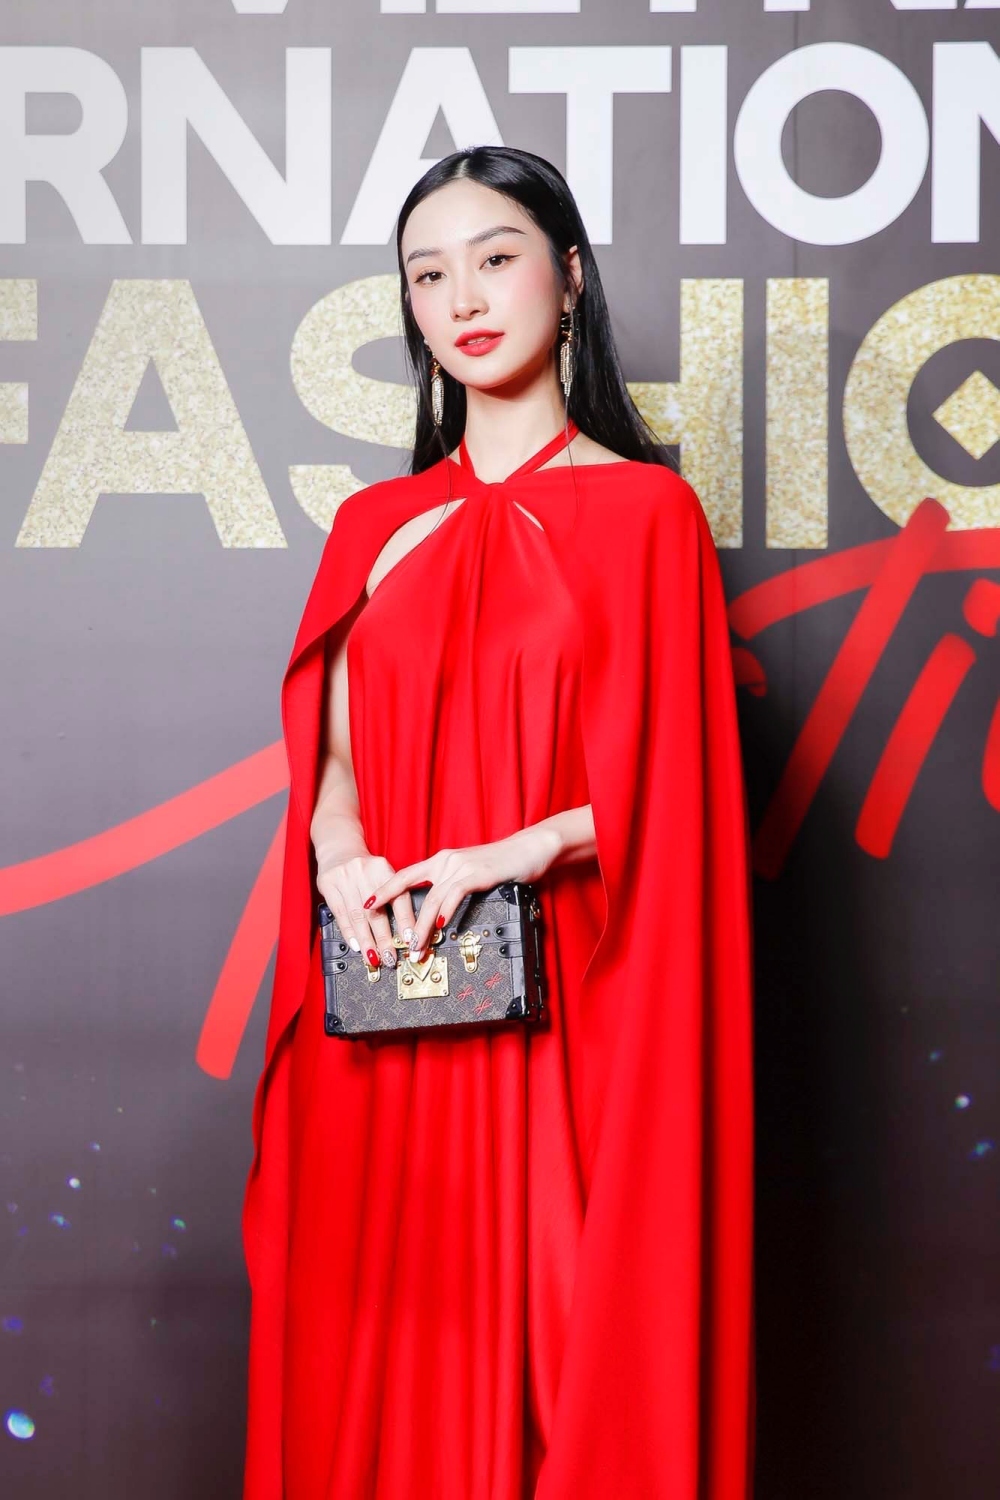  
Diễn viên Jun Vũ nổi bật với chiếc váy rộng tông đỏ.